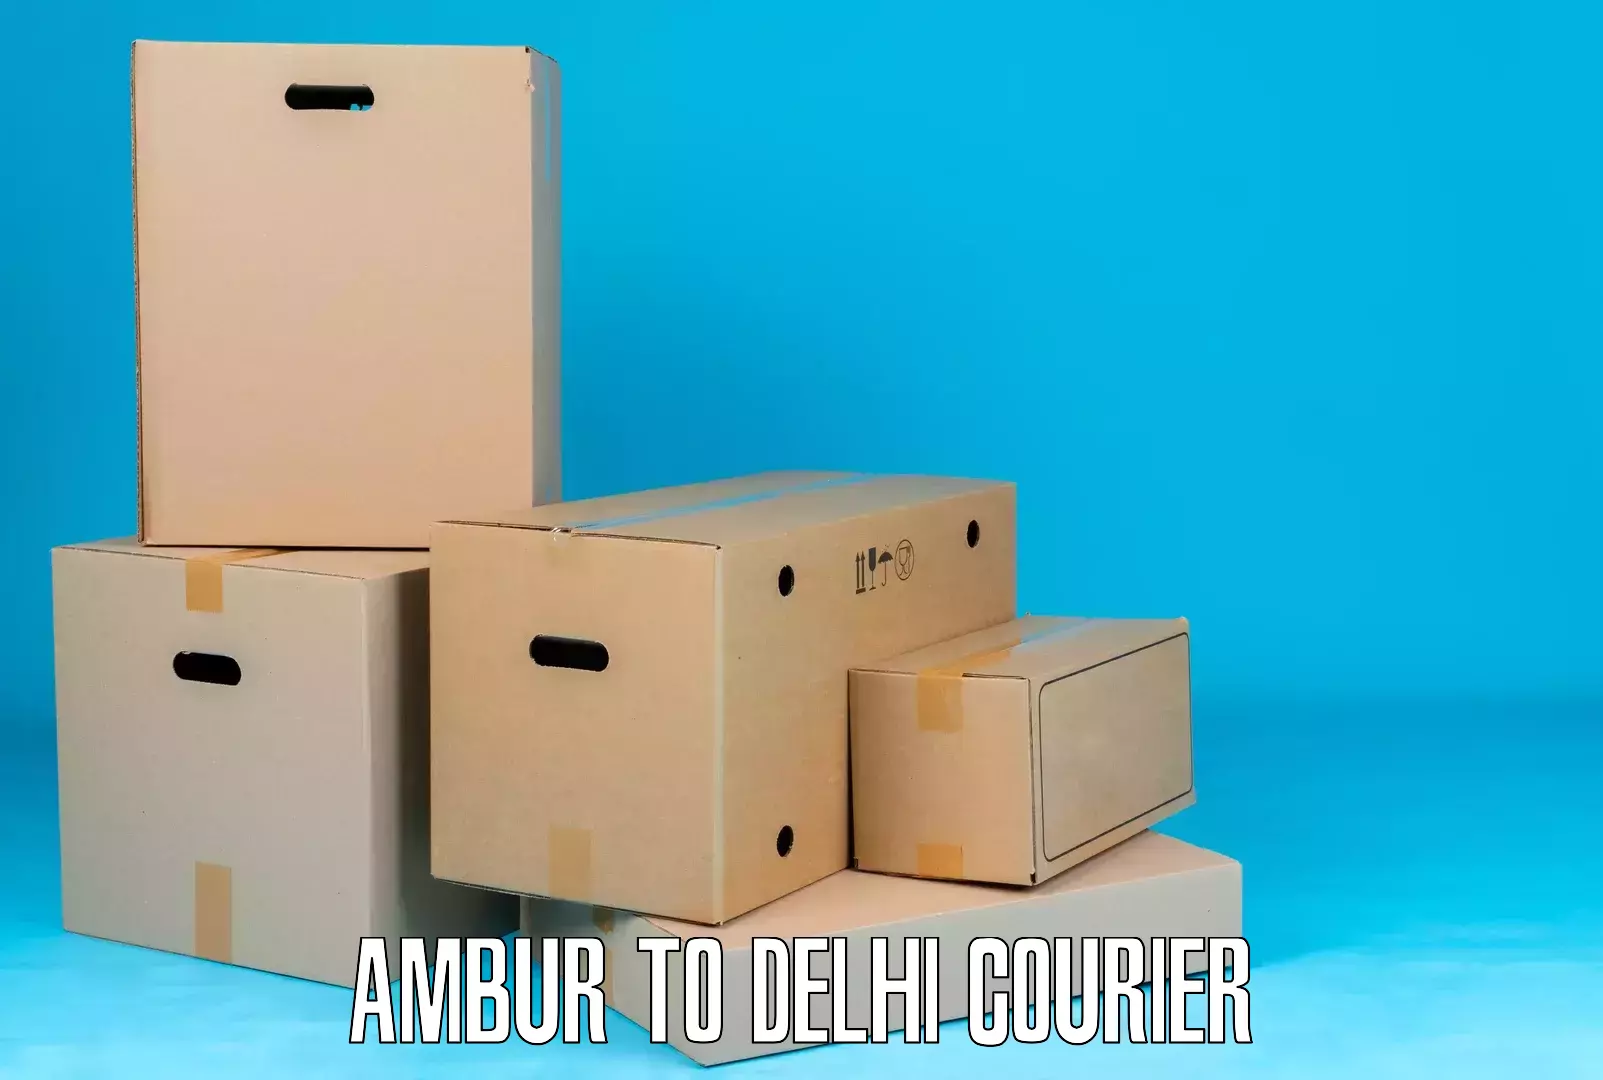 Scheduled delivery in Ambur to IIT Delhi